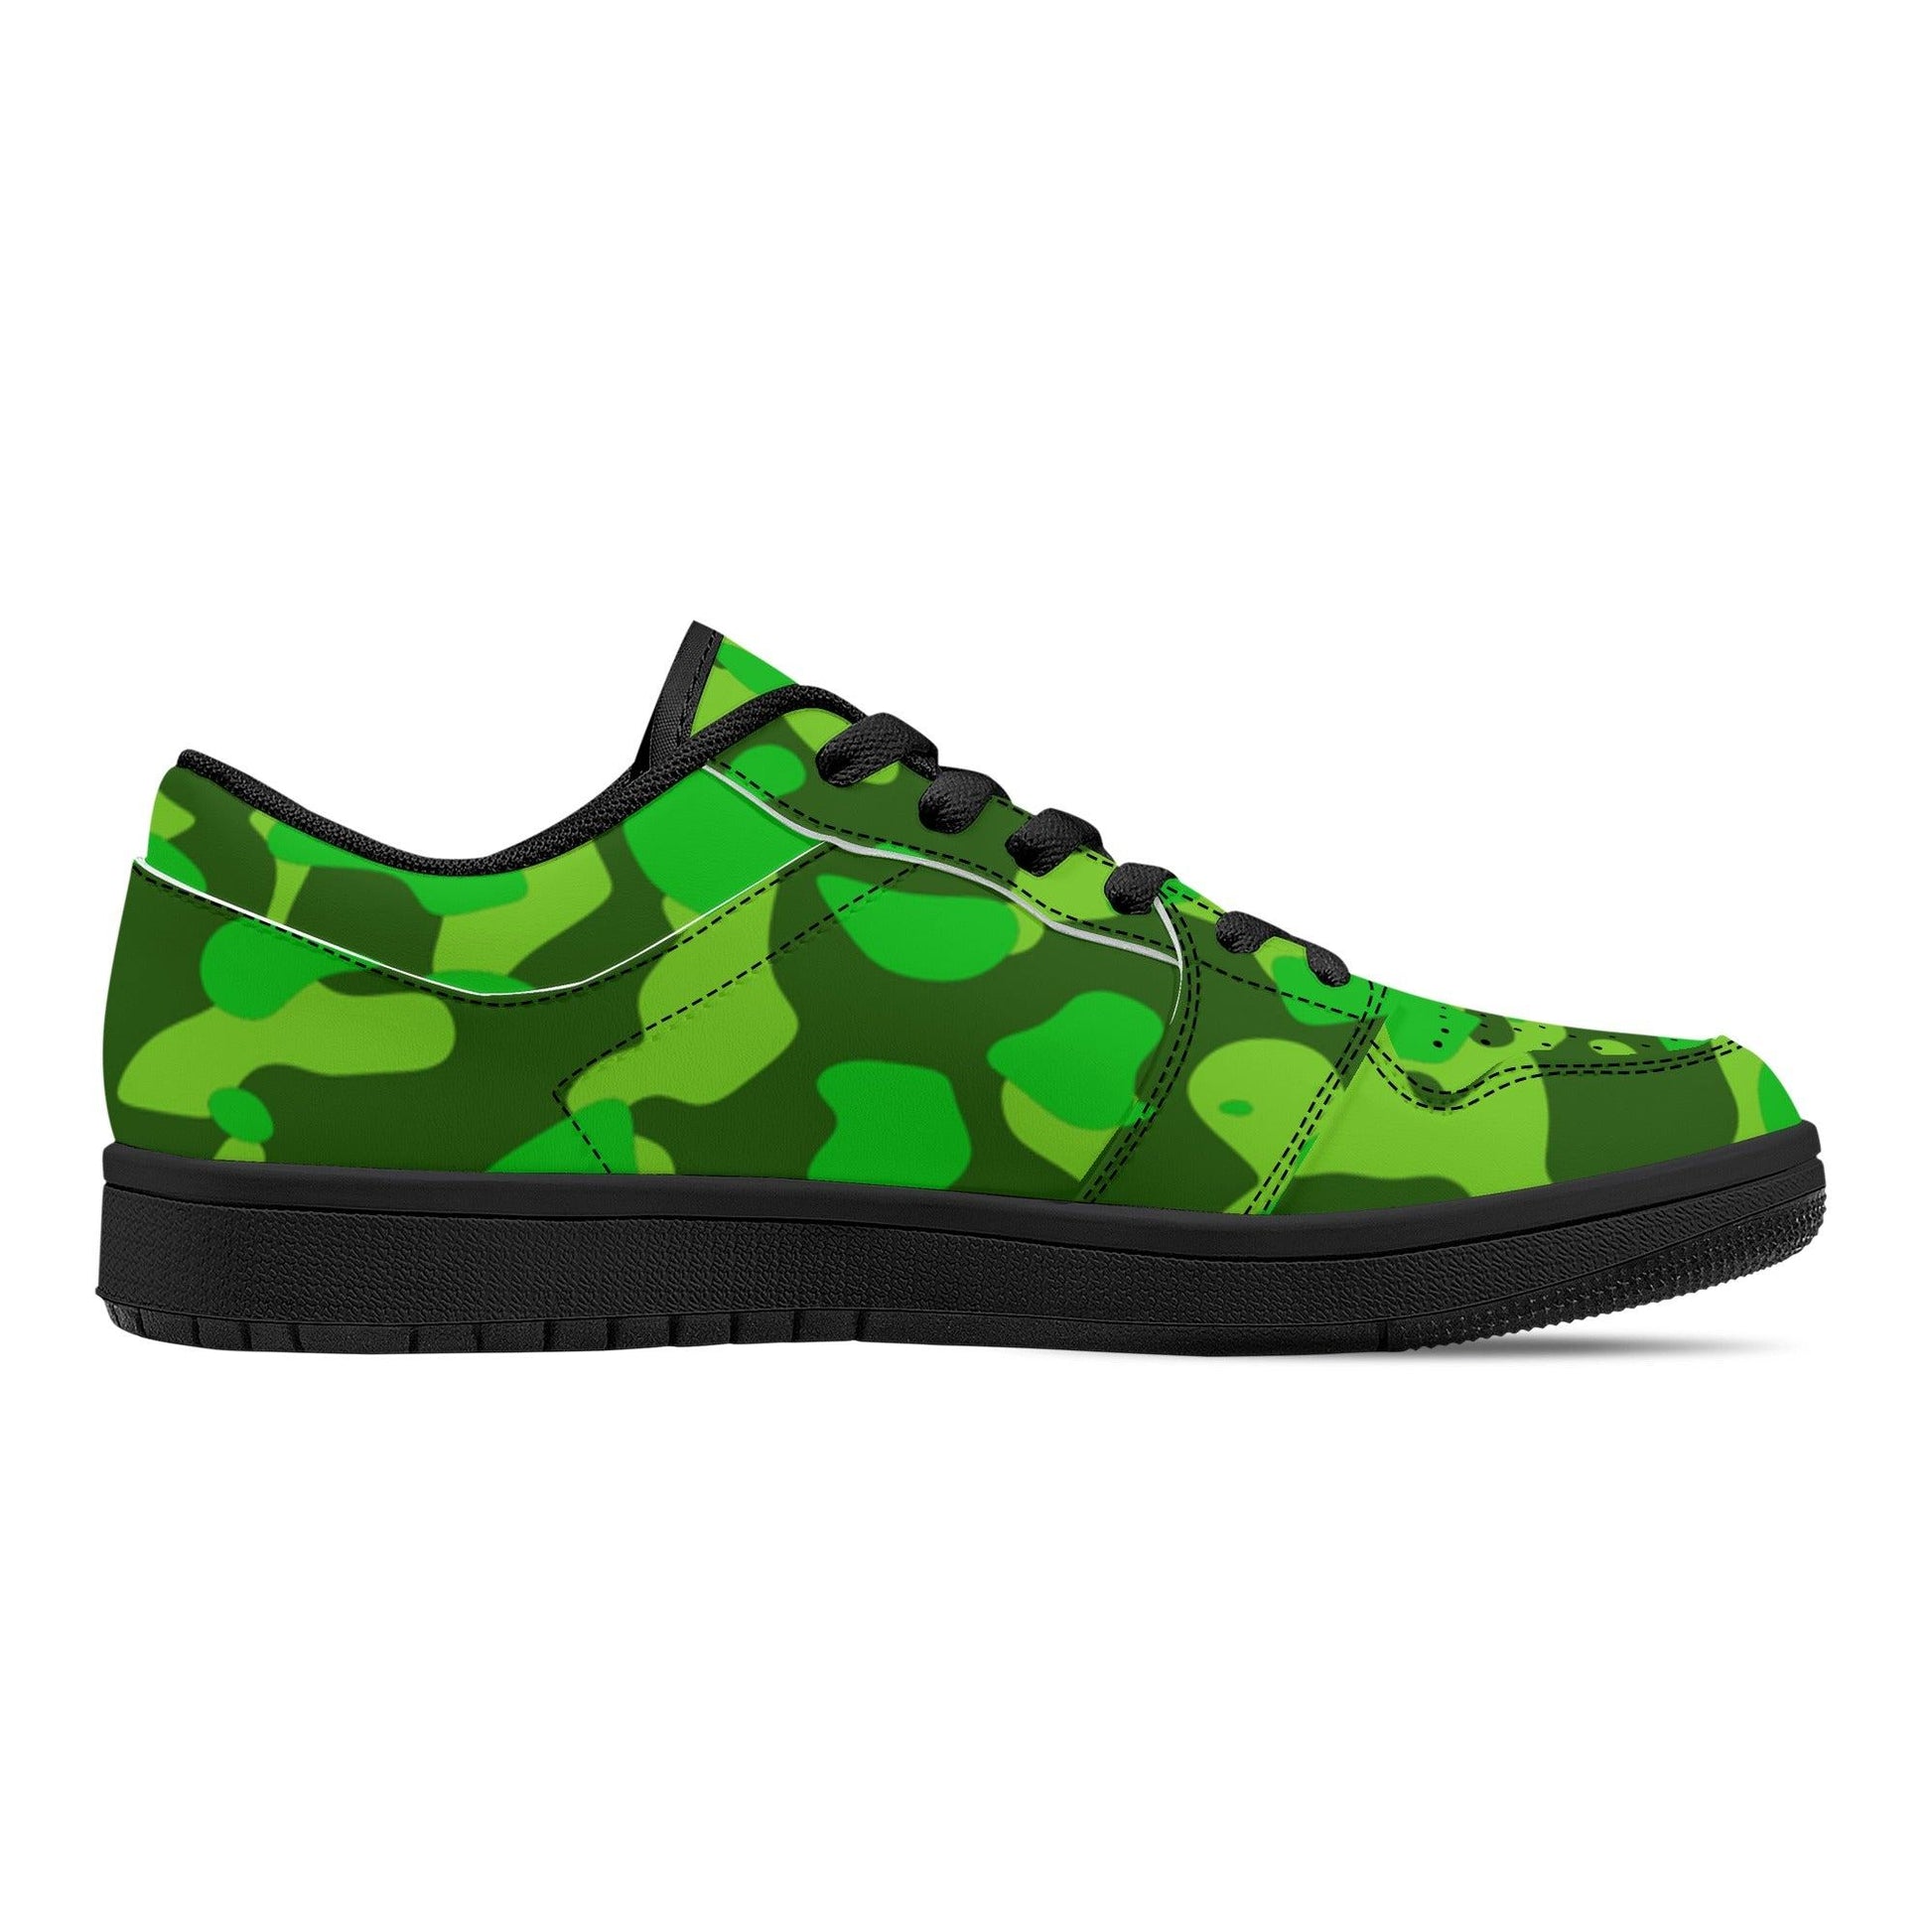 Lime Green Camouflage Low Top Sneaker für Herren Low Top Sneaker 79.99 JLR Design